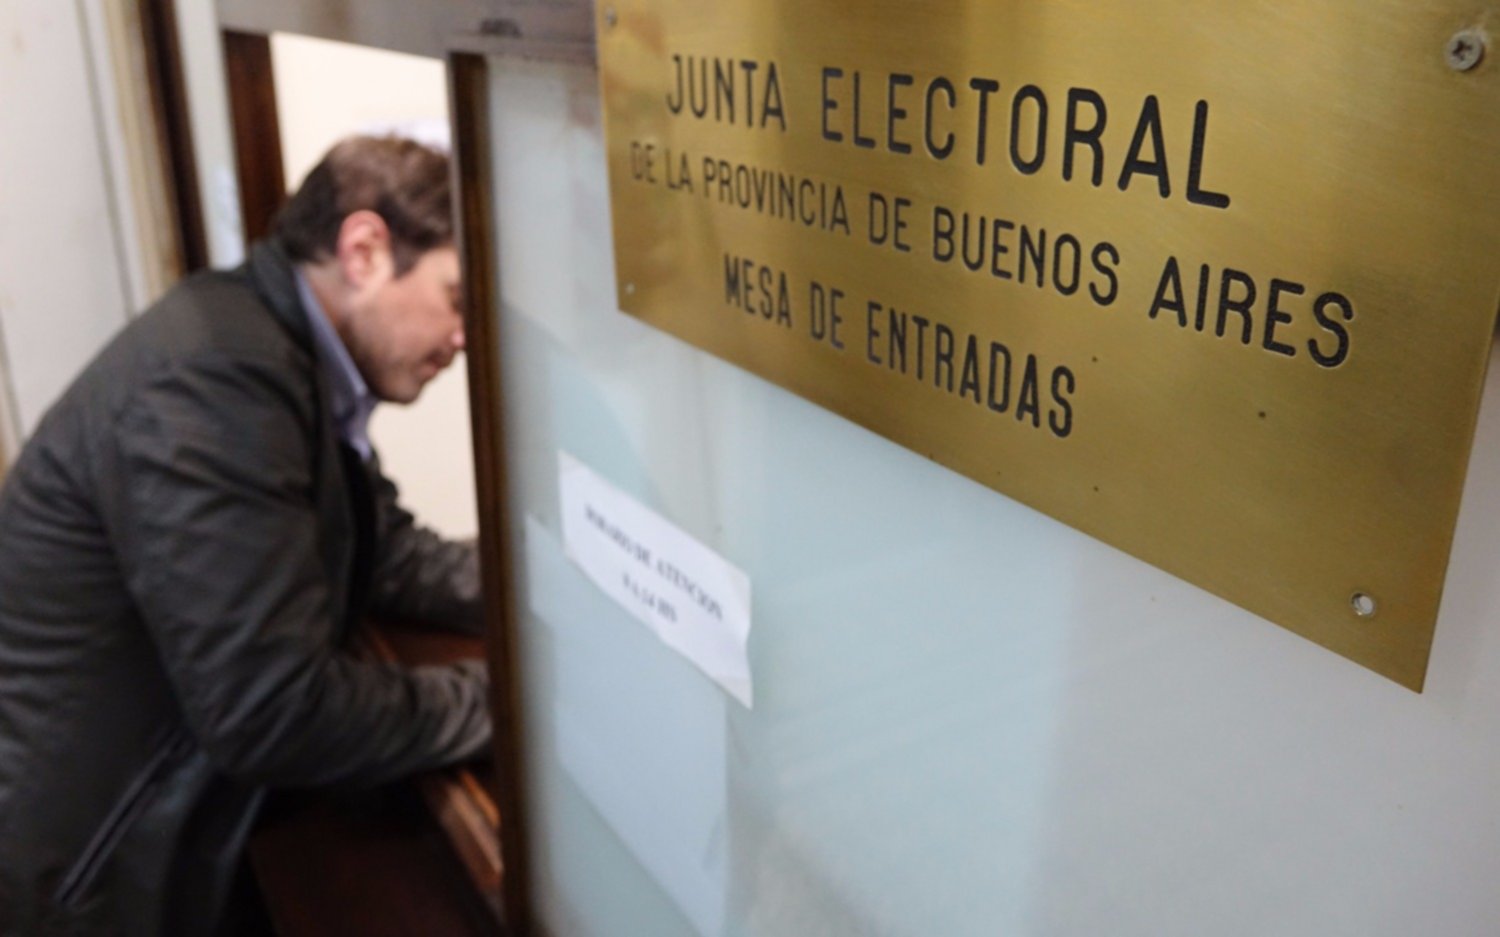 La Junta Electoral declaró la caducidad de tres fuerzas políticas de la Región